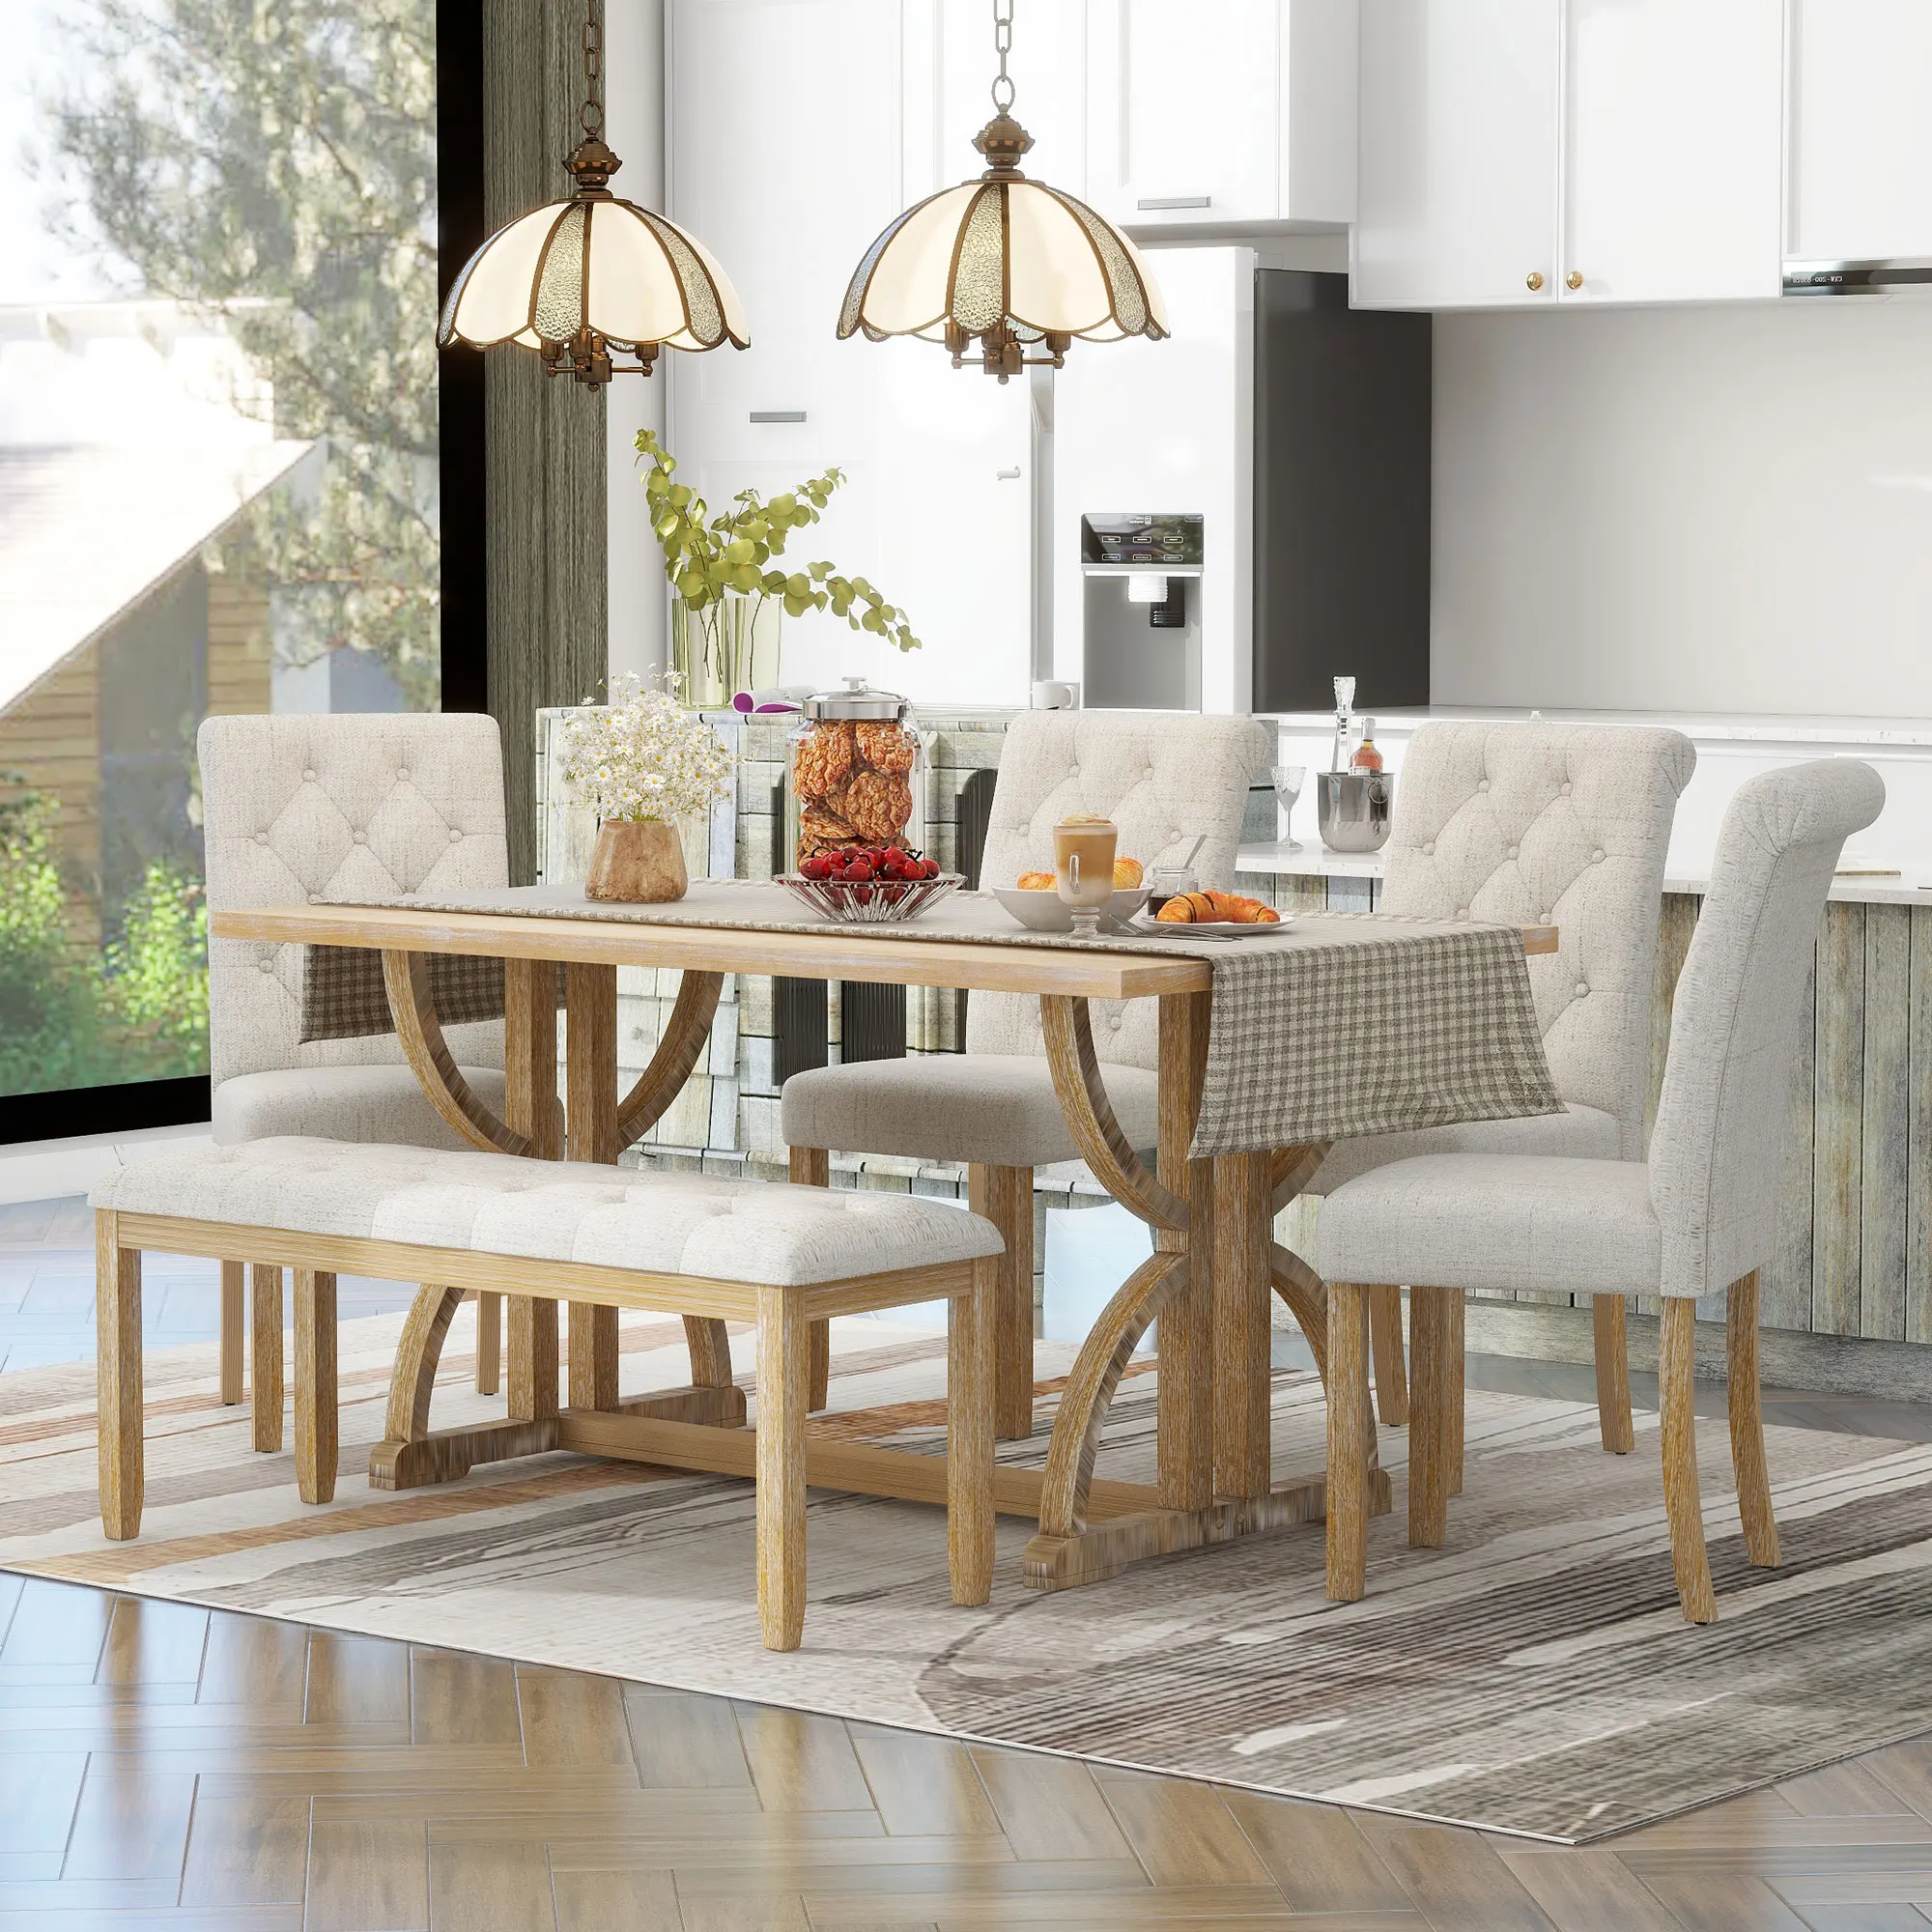 

Набор из 6 предметов прямоугольного обеденного стола в стиле ретро со столом, 4 мягкими стульями, 1 скамейка для столовой, стирка из натурального дерева